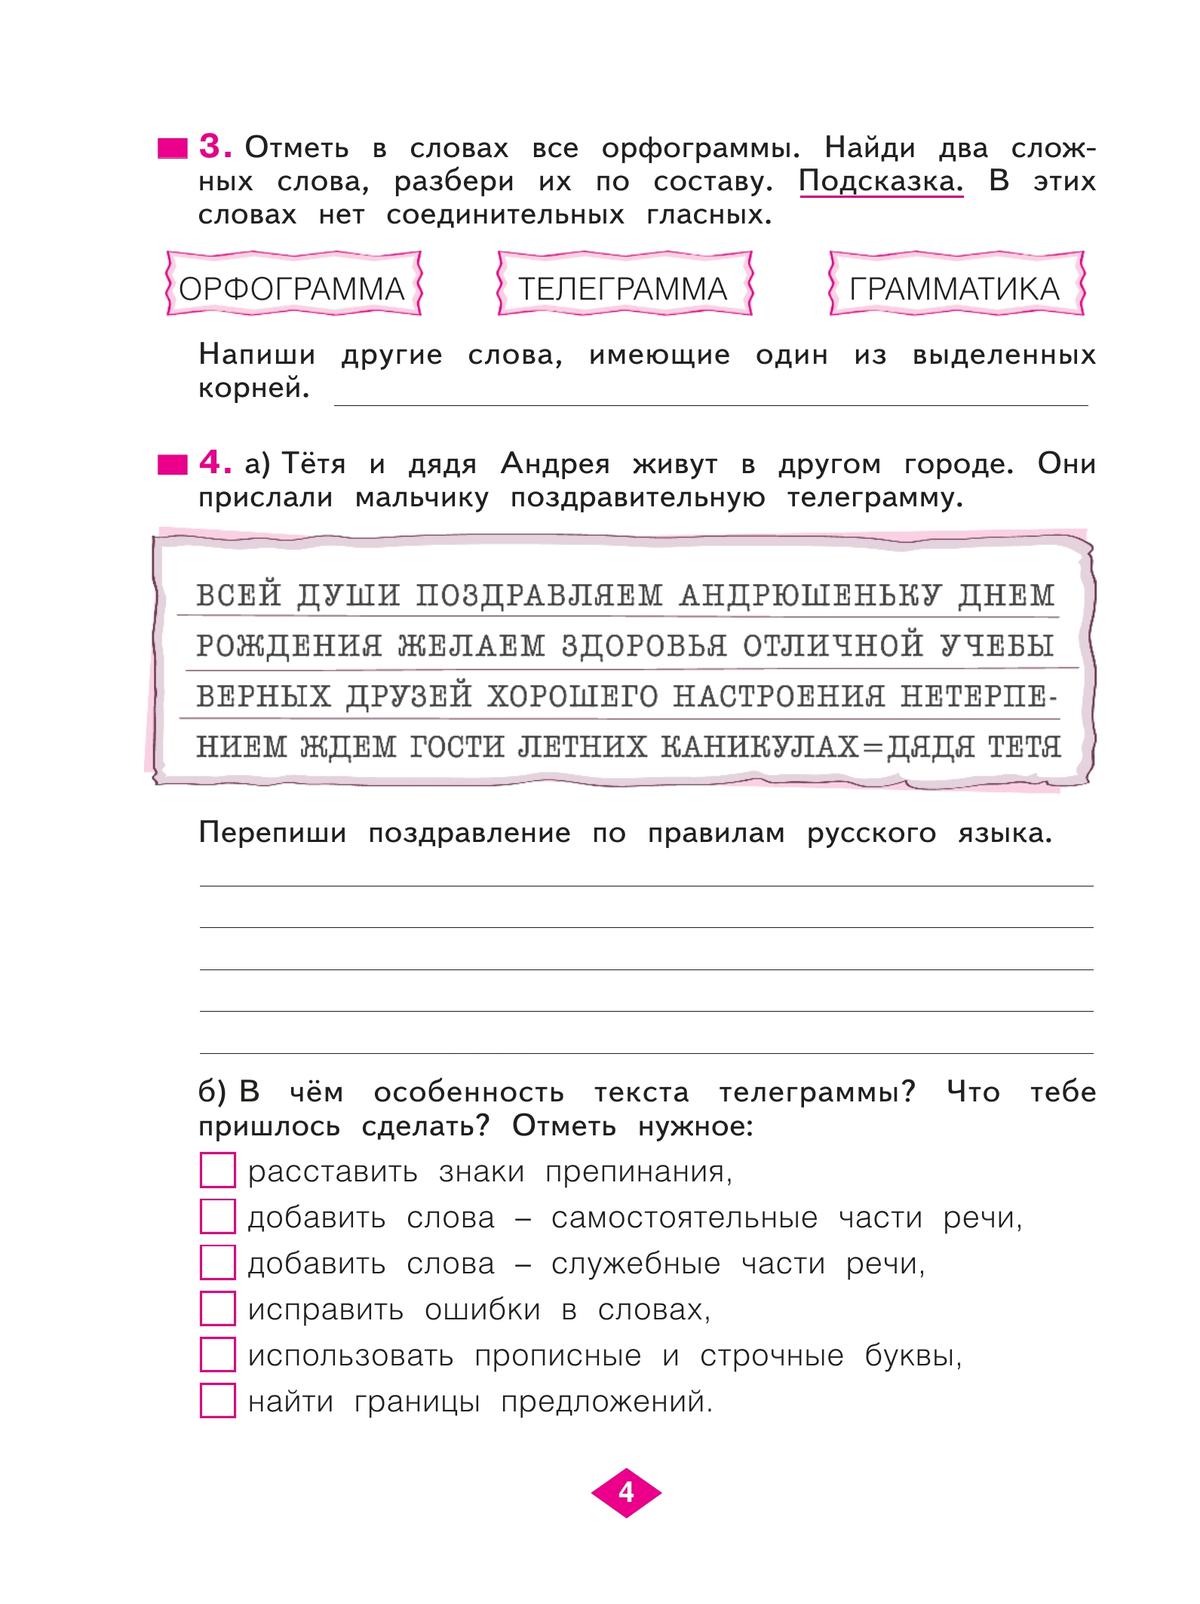 Русский язык. Рабочая тетрадь. 4 класс. В 4-х частях. Часть 1 5